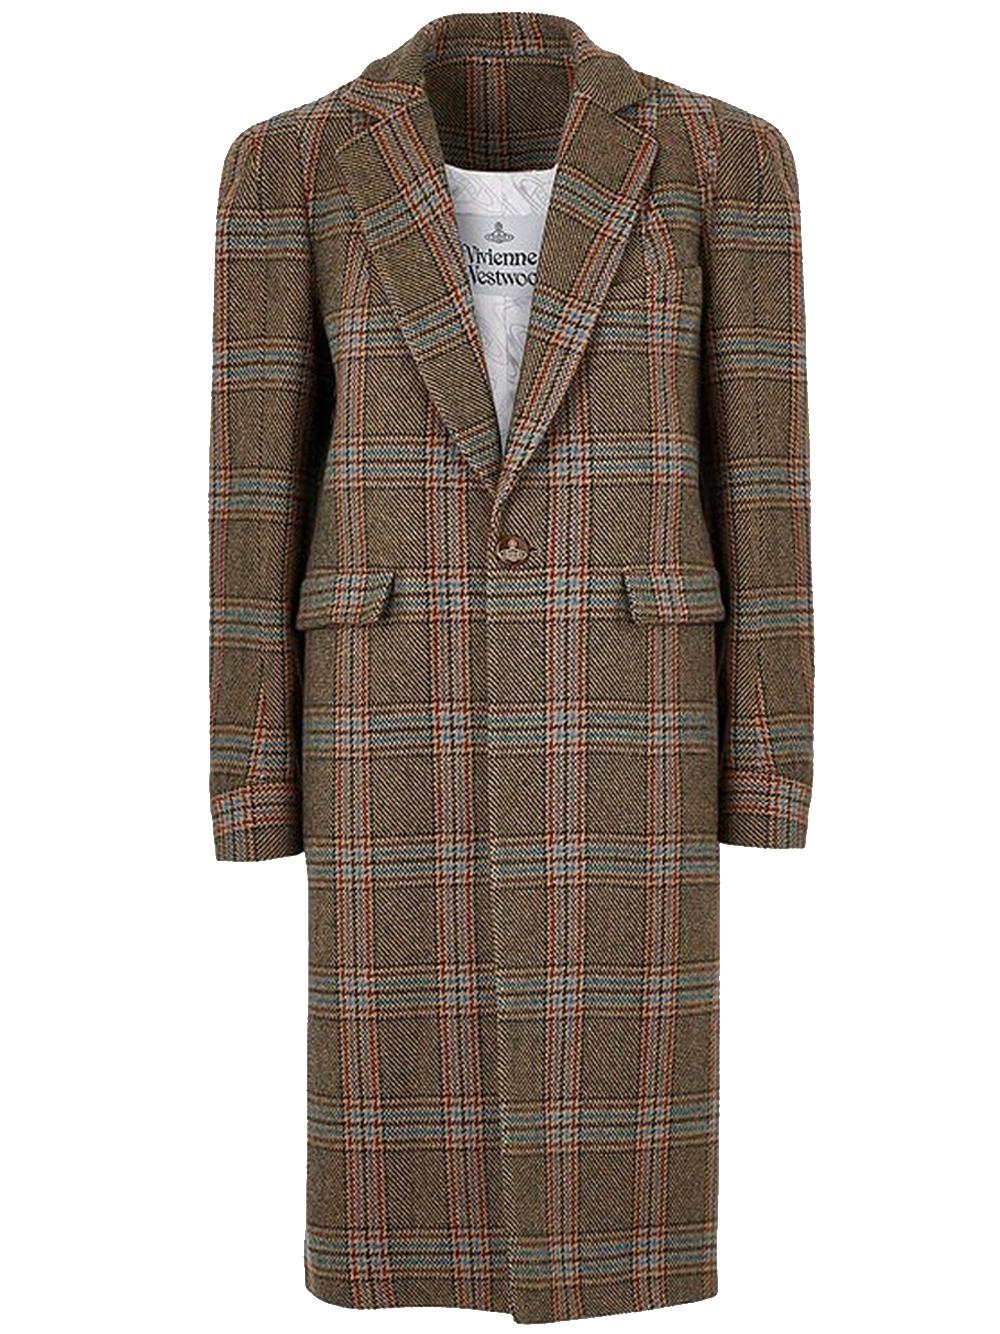 Vivienne Westwood Alien Teddy Coat Brown In Wool | Lyst